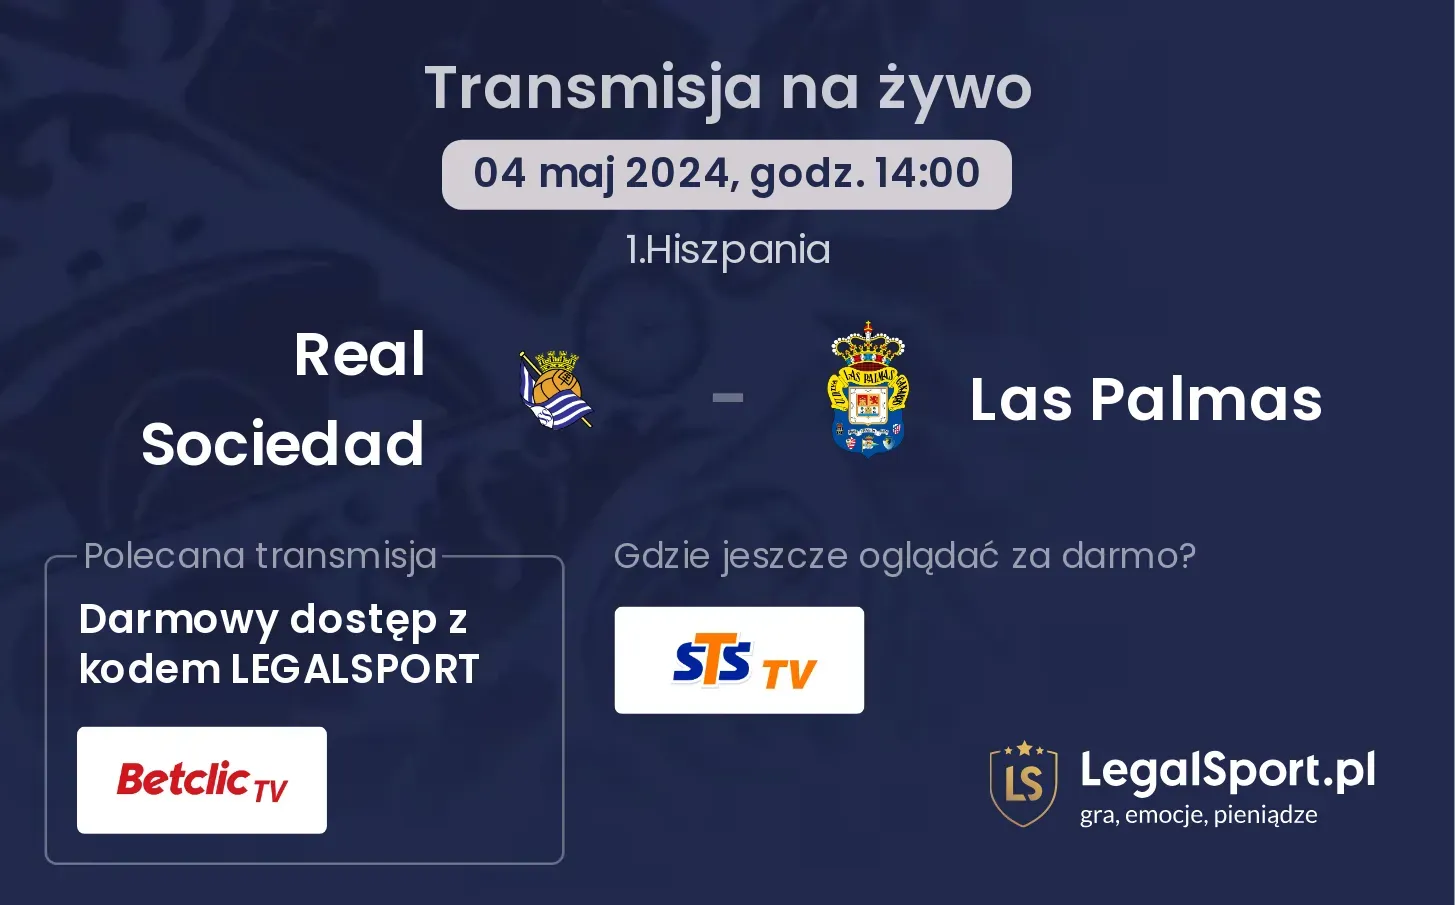 Real Sociedad - Las Palmas transmisja na żywo